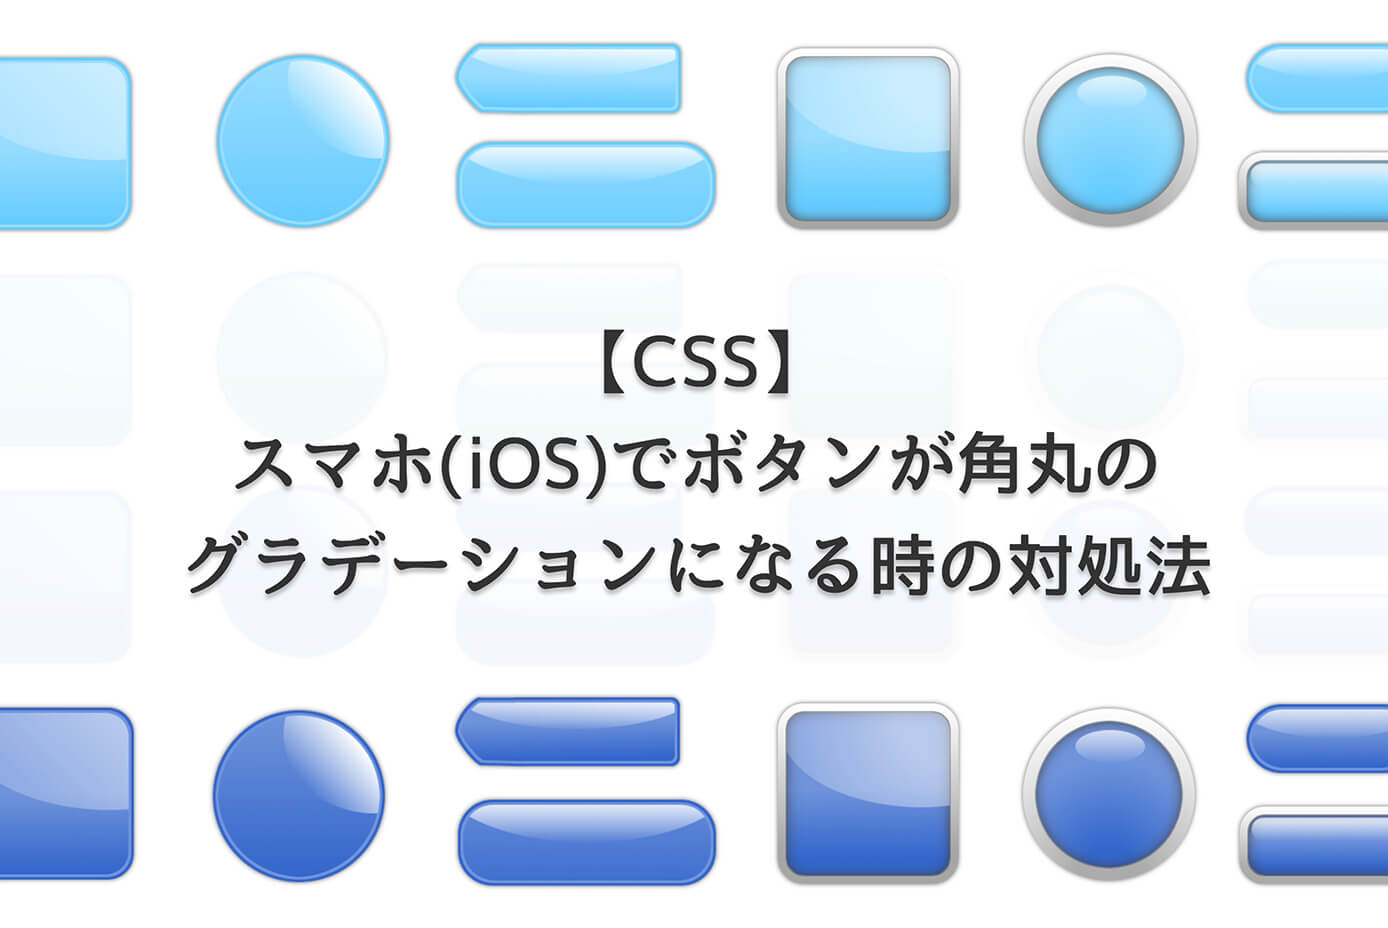 【CSS】スマホ(iOS)でボタンが角丸のグラデーションになってしまう時の対処法